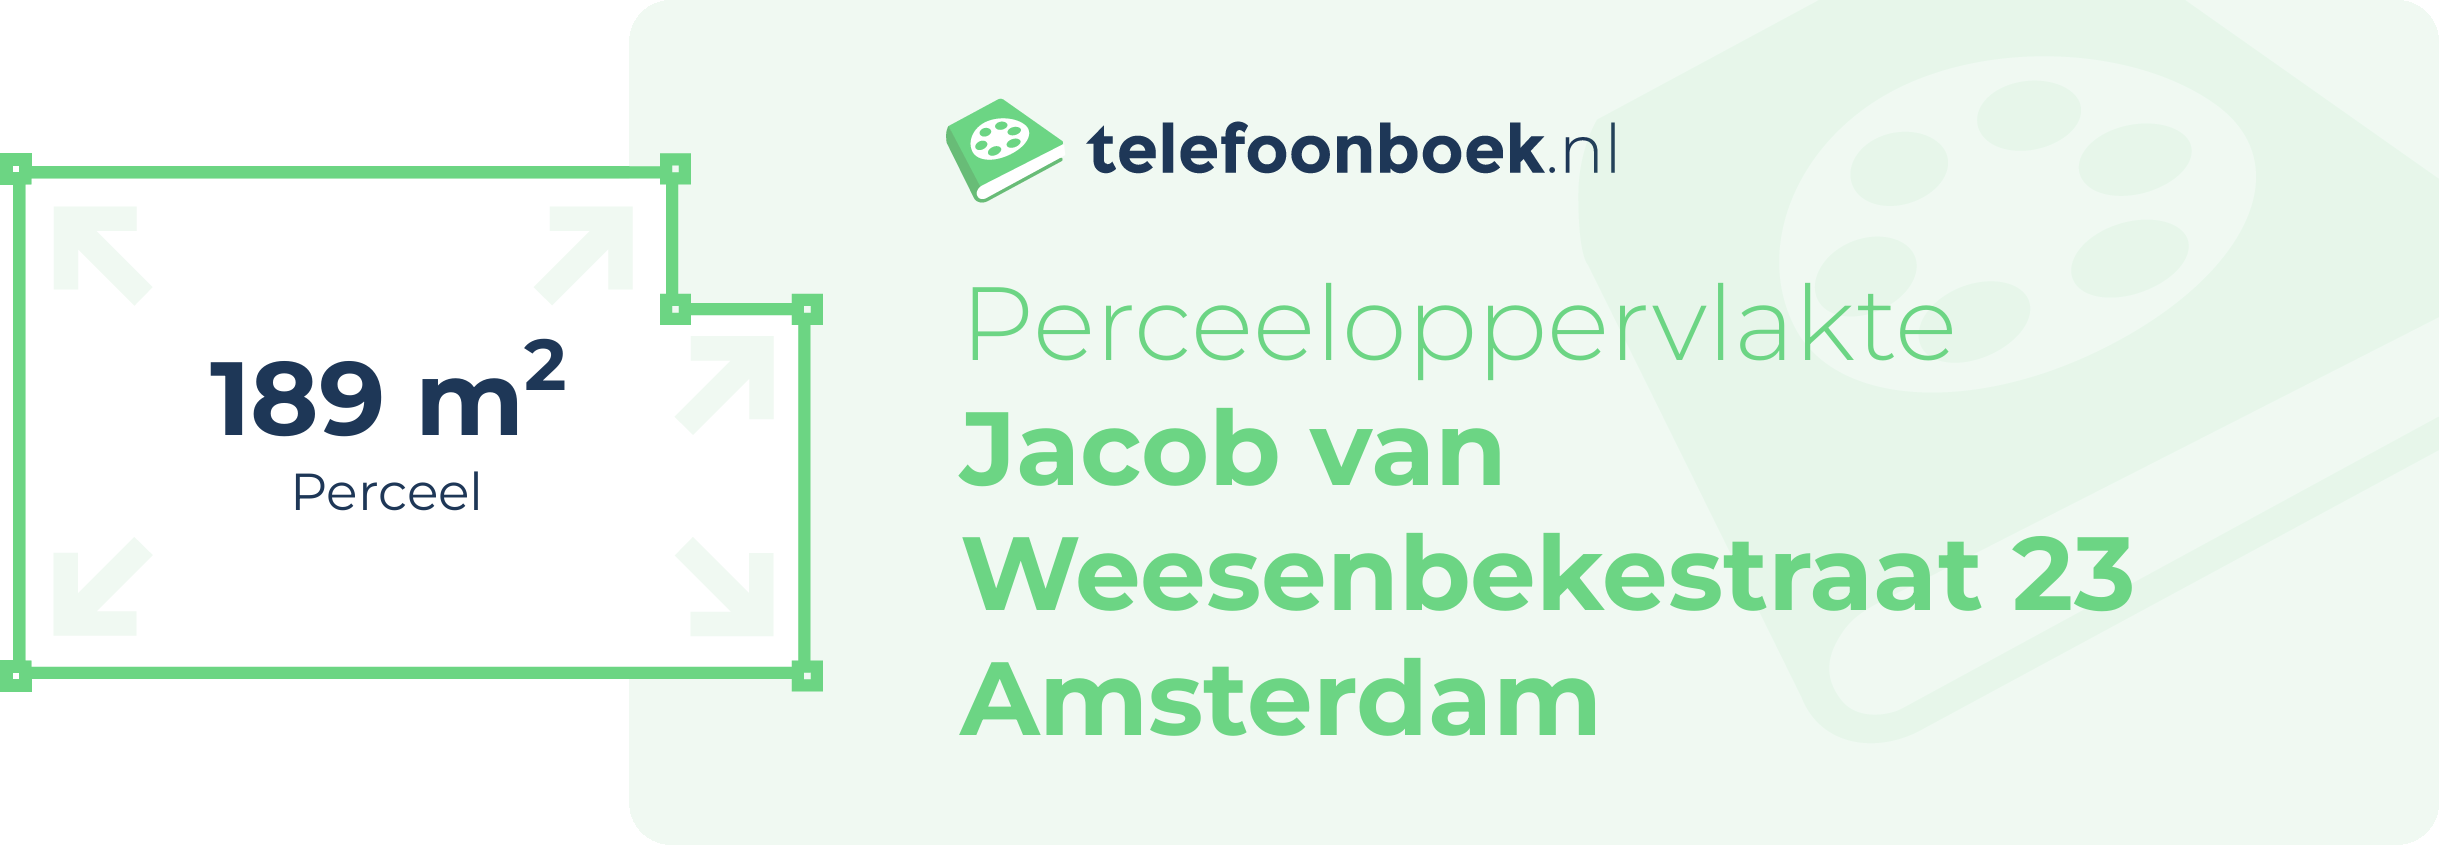 Perceeloppervlakte Jacob Van Weesenbekestraat 23 Amsterdam